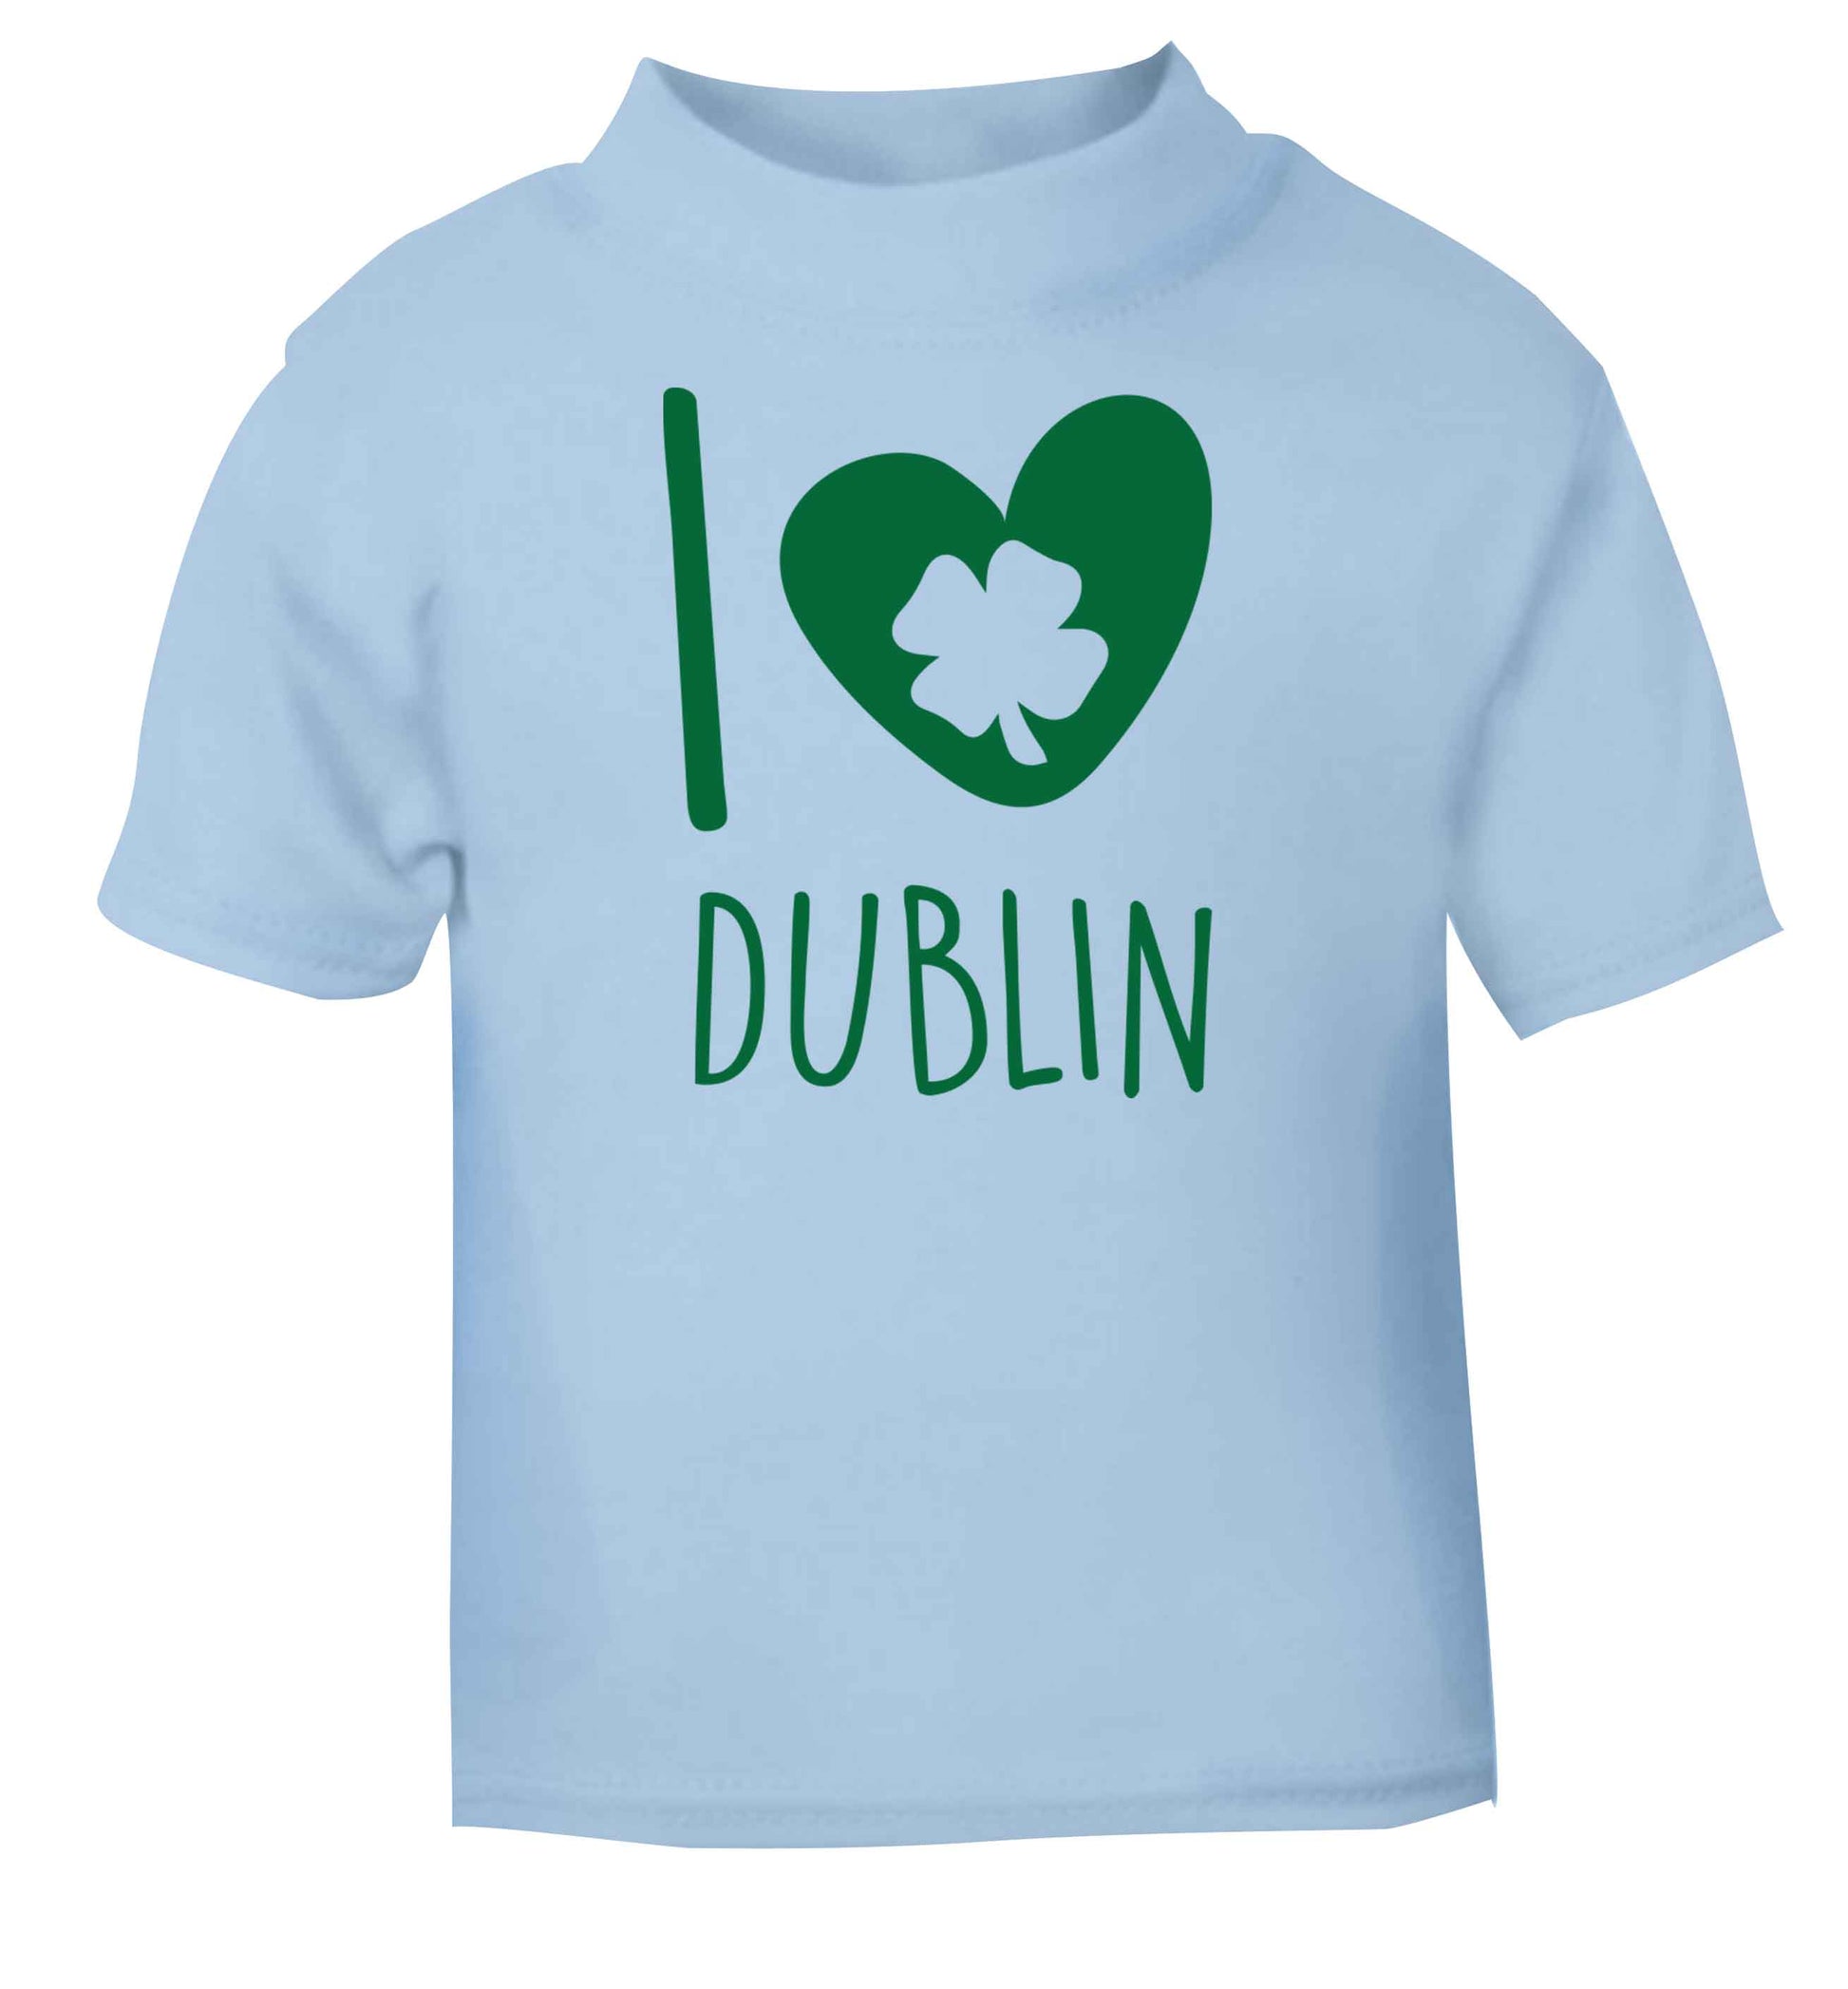 I love Dublin light blue baby toddler Tshirt 2 Years